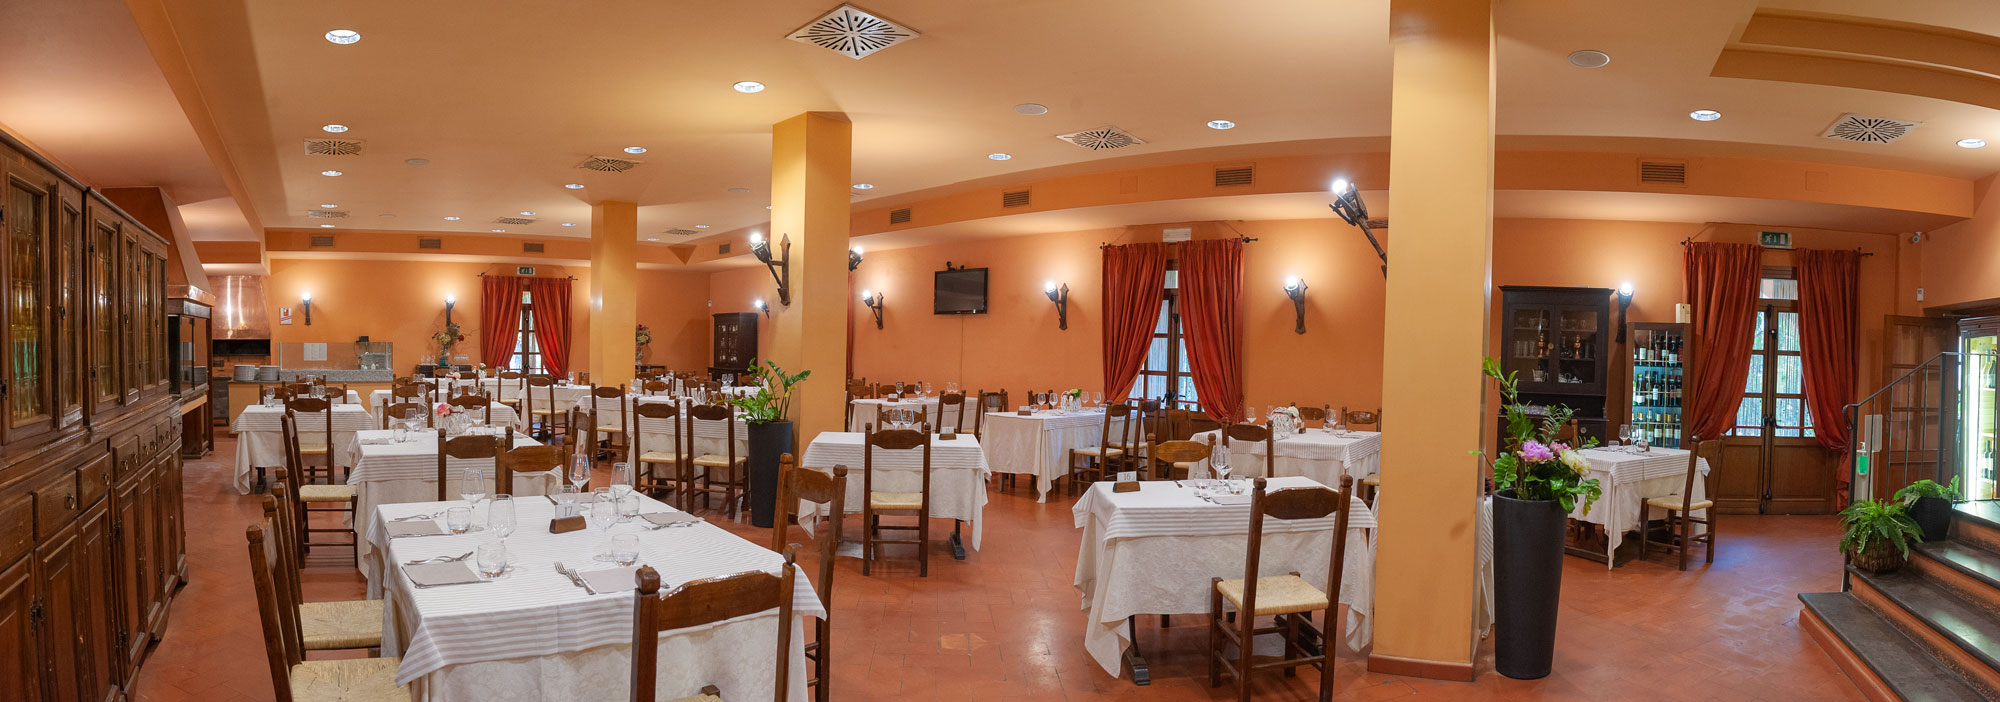 La Fattoria Spoleto: sala da pranzo – Ristorante – Pizzeria – Albergo